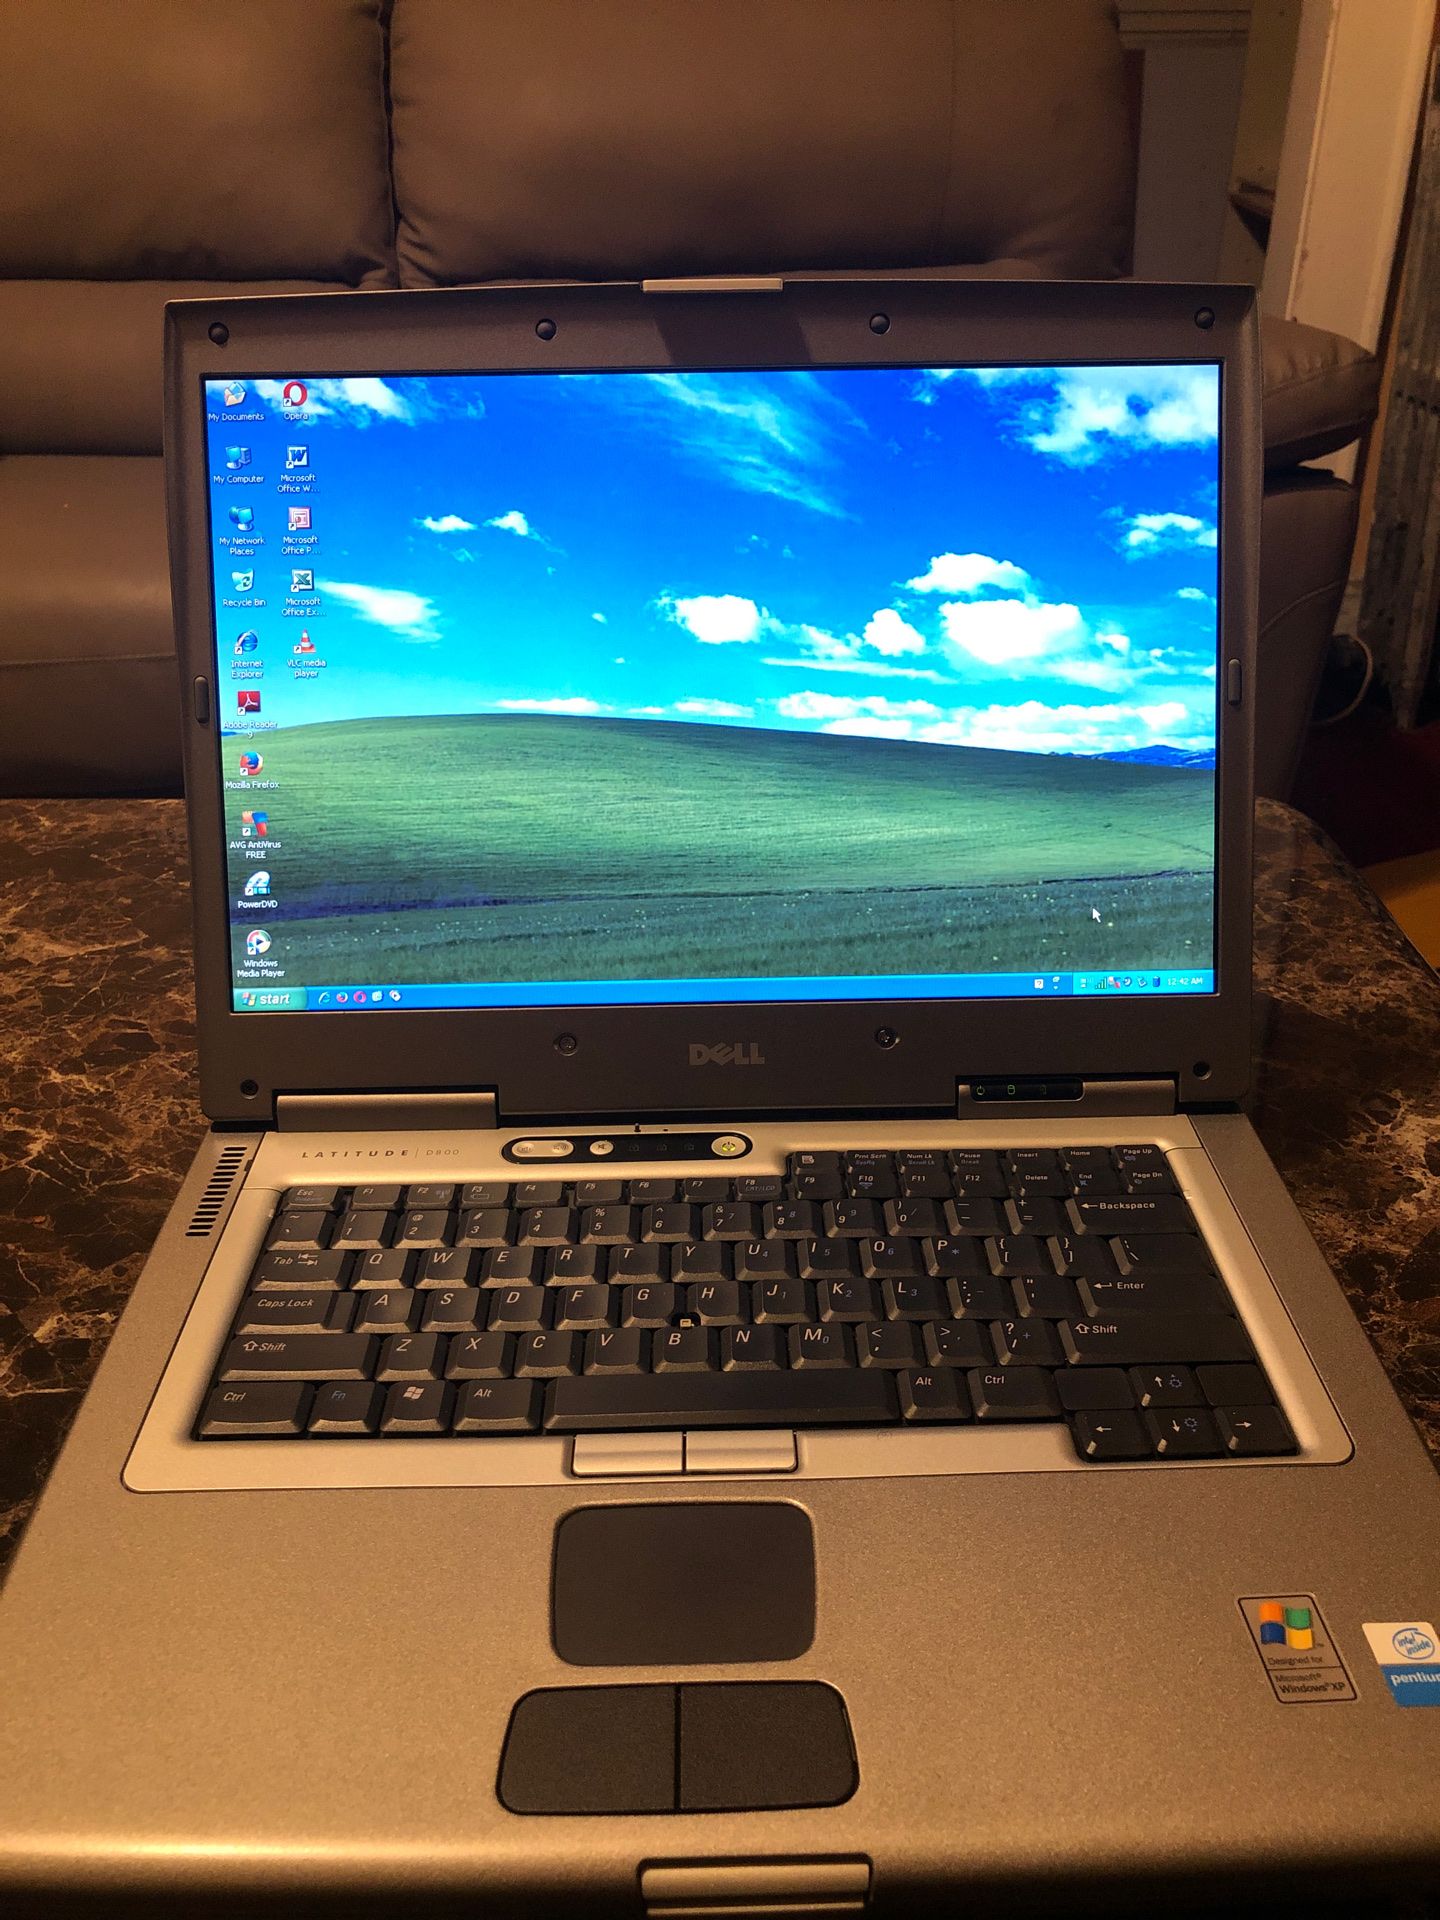 Dell Latitude D800 Laptp